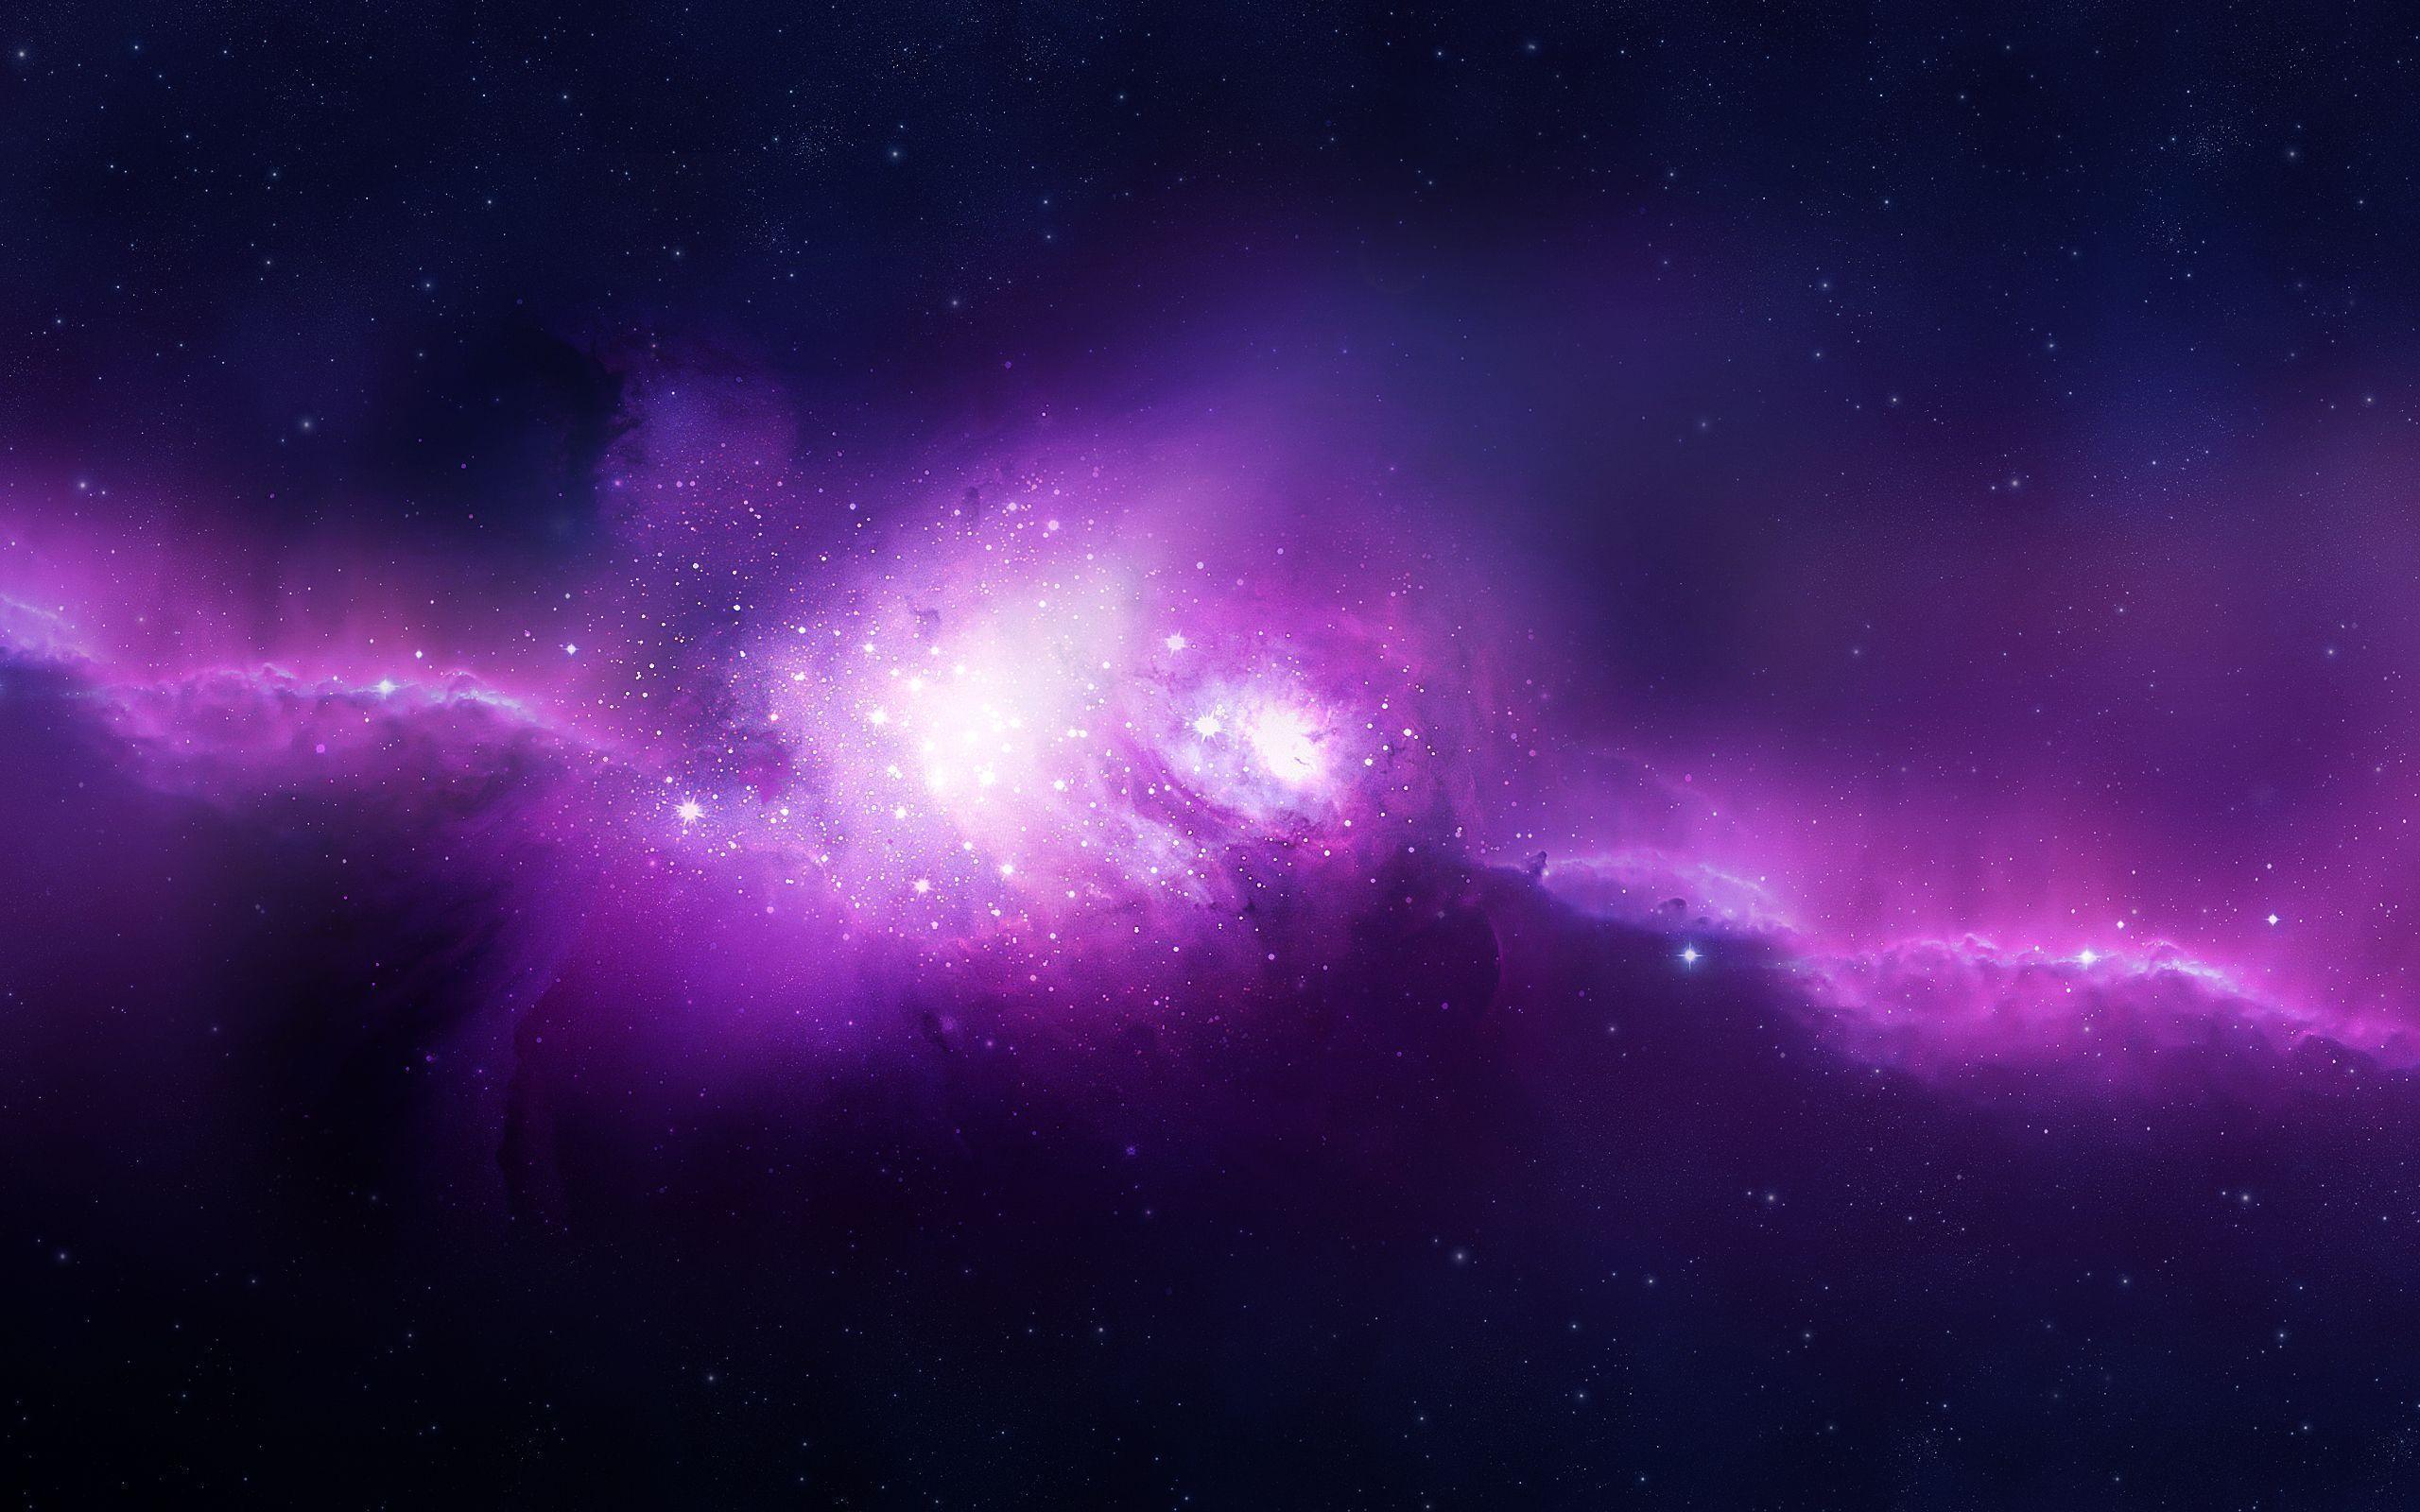 Vũ trụ tím: Vũ trụ tím đẹp xuất sắc và đầy bí ẩn. Những cảnh quan độc đáo này như một lời mời gọi với những người đam mê khoa học và thiên văn học. Hãy đắm mình trong vô vàn các ngôi sao và hành tinh của chúng ta.